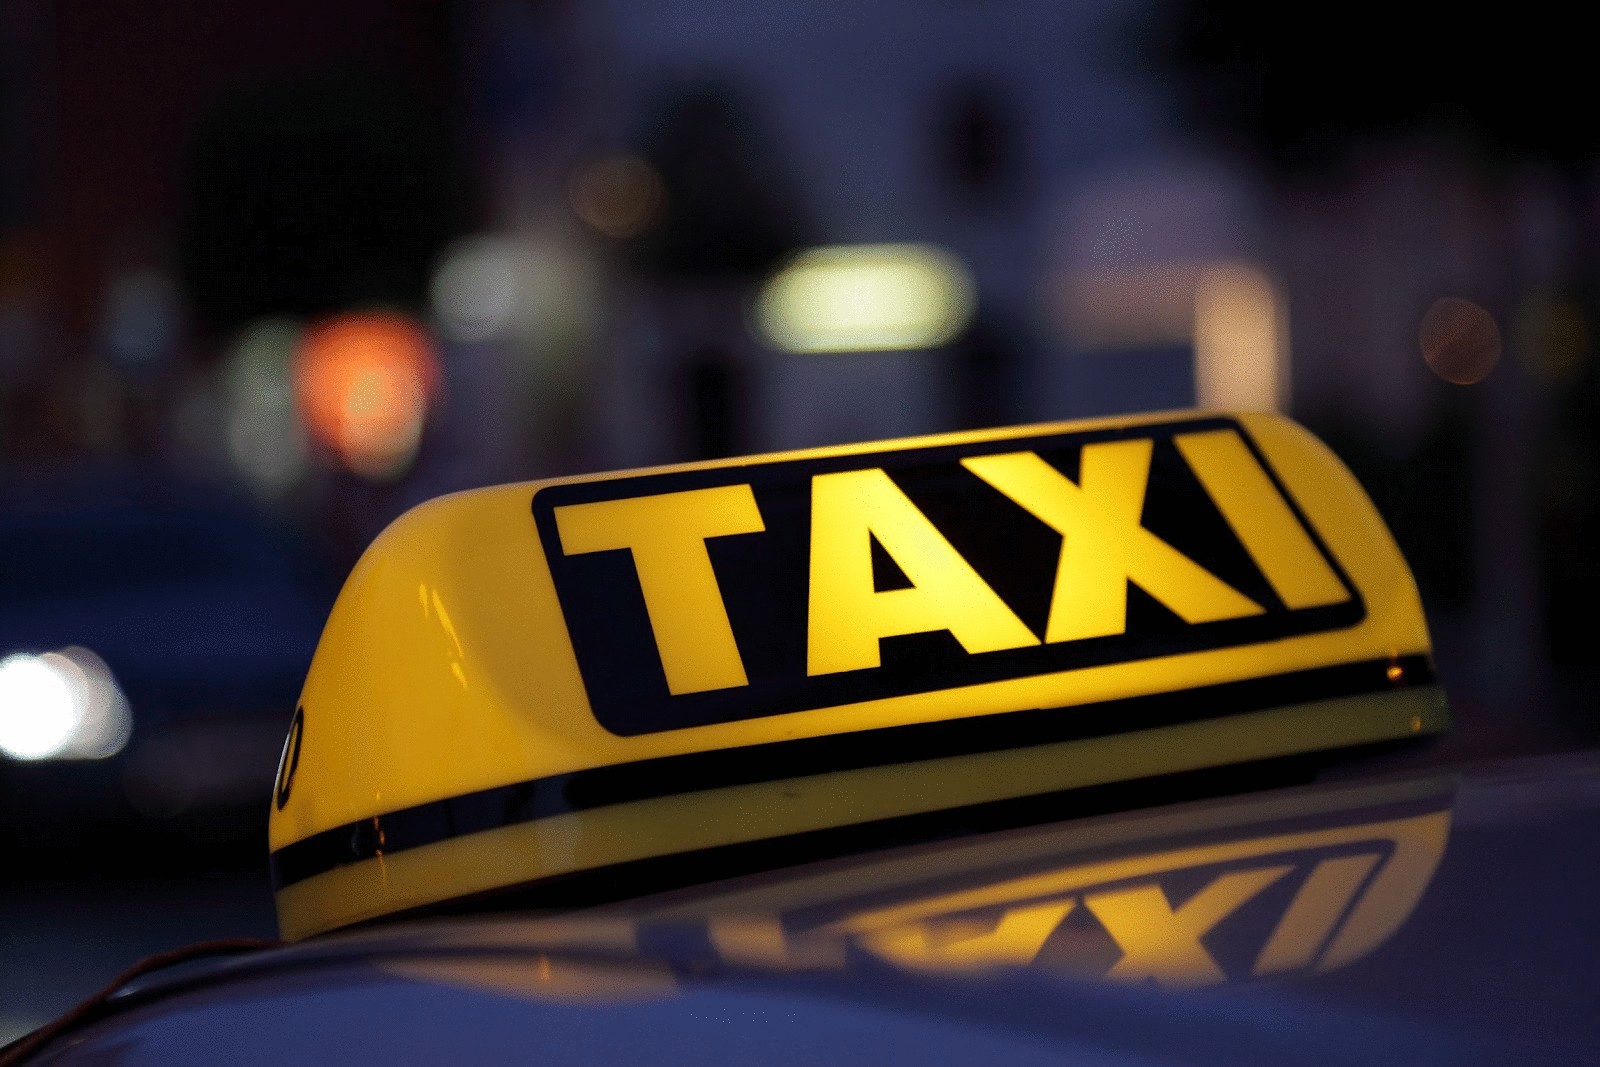 Онлайн заказ такси Киев  Teleport